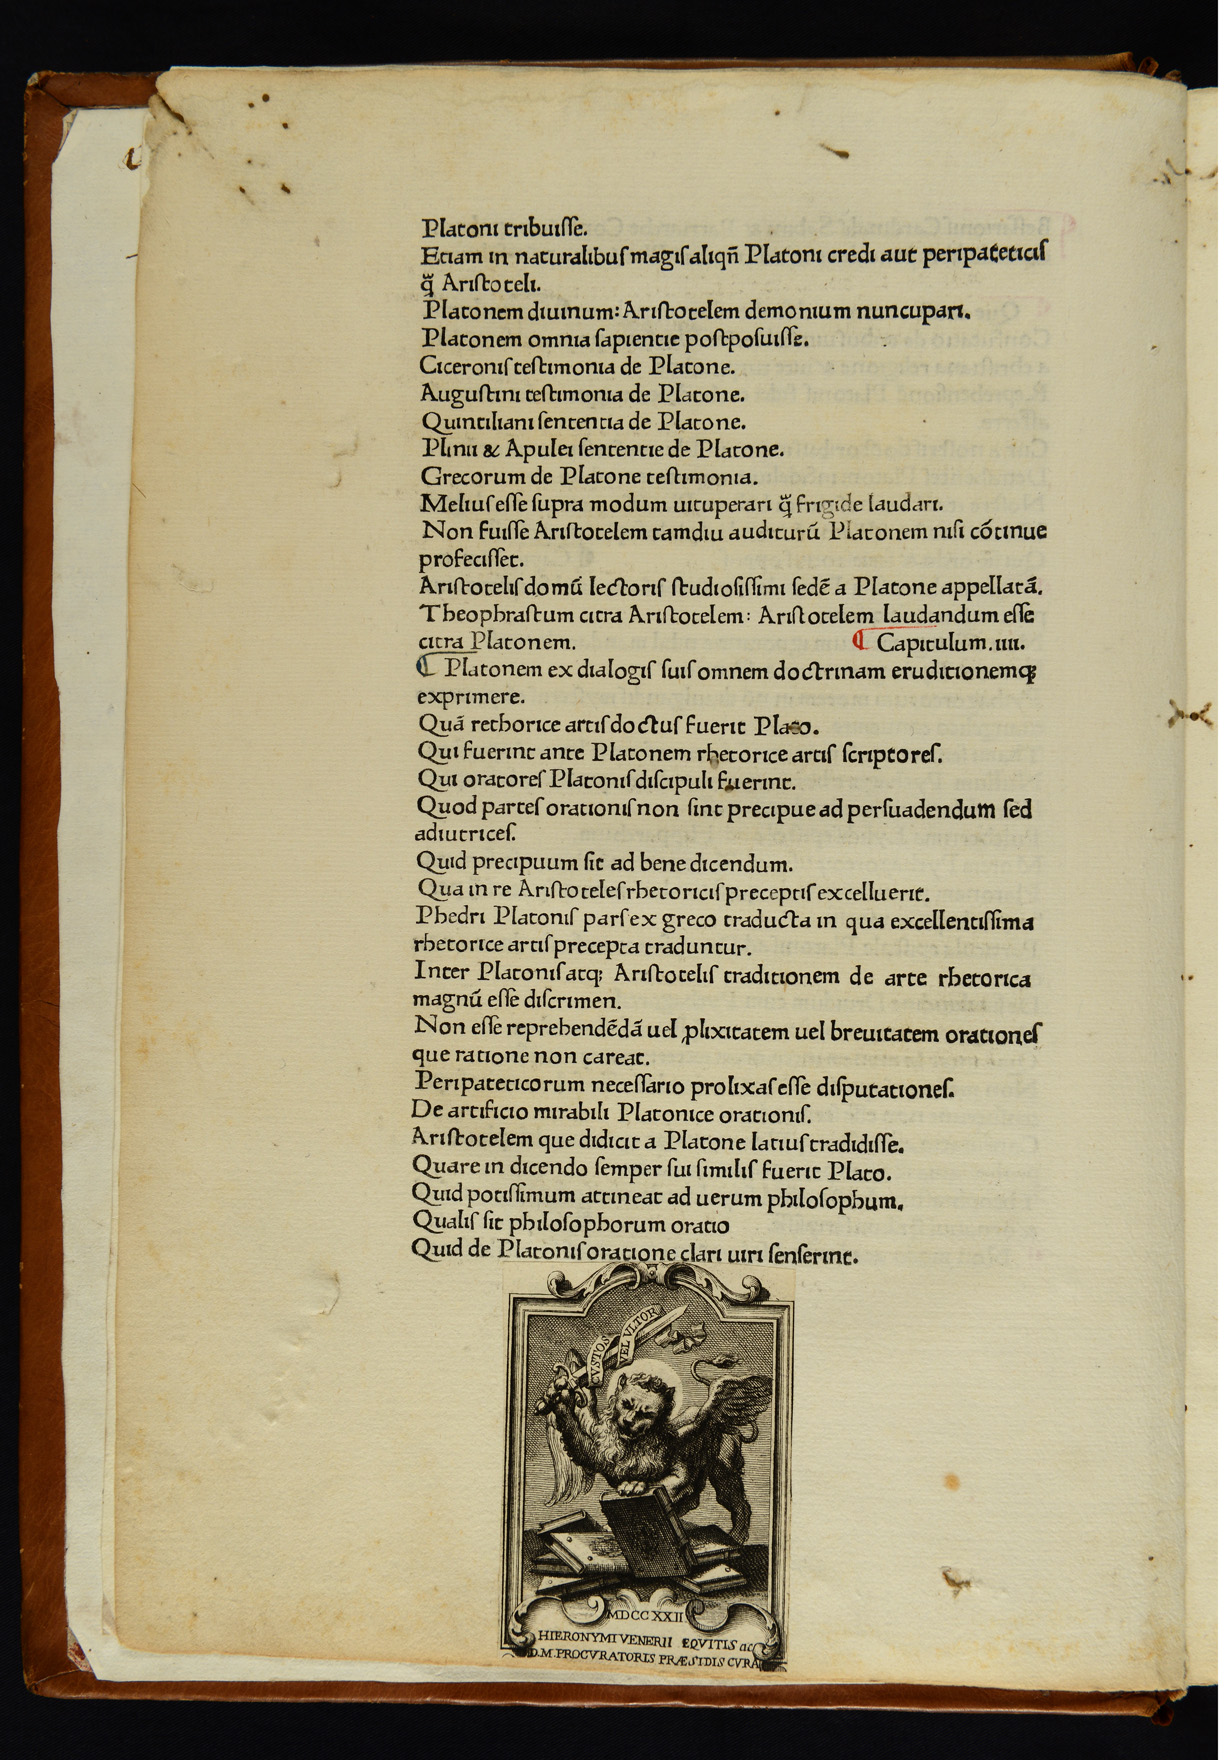 Inc. 219: Bessarionis cardinalis Sabini & patriarche Constantinopolitani capitula libri primi aduersus calumniatorem Platonis incipiunt feliciter